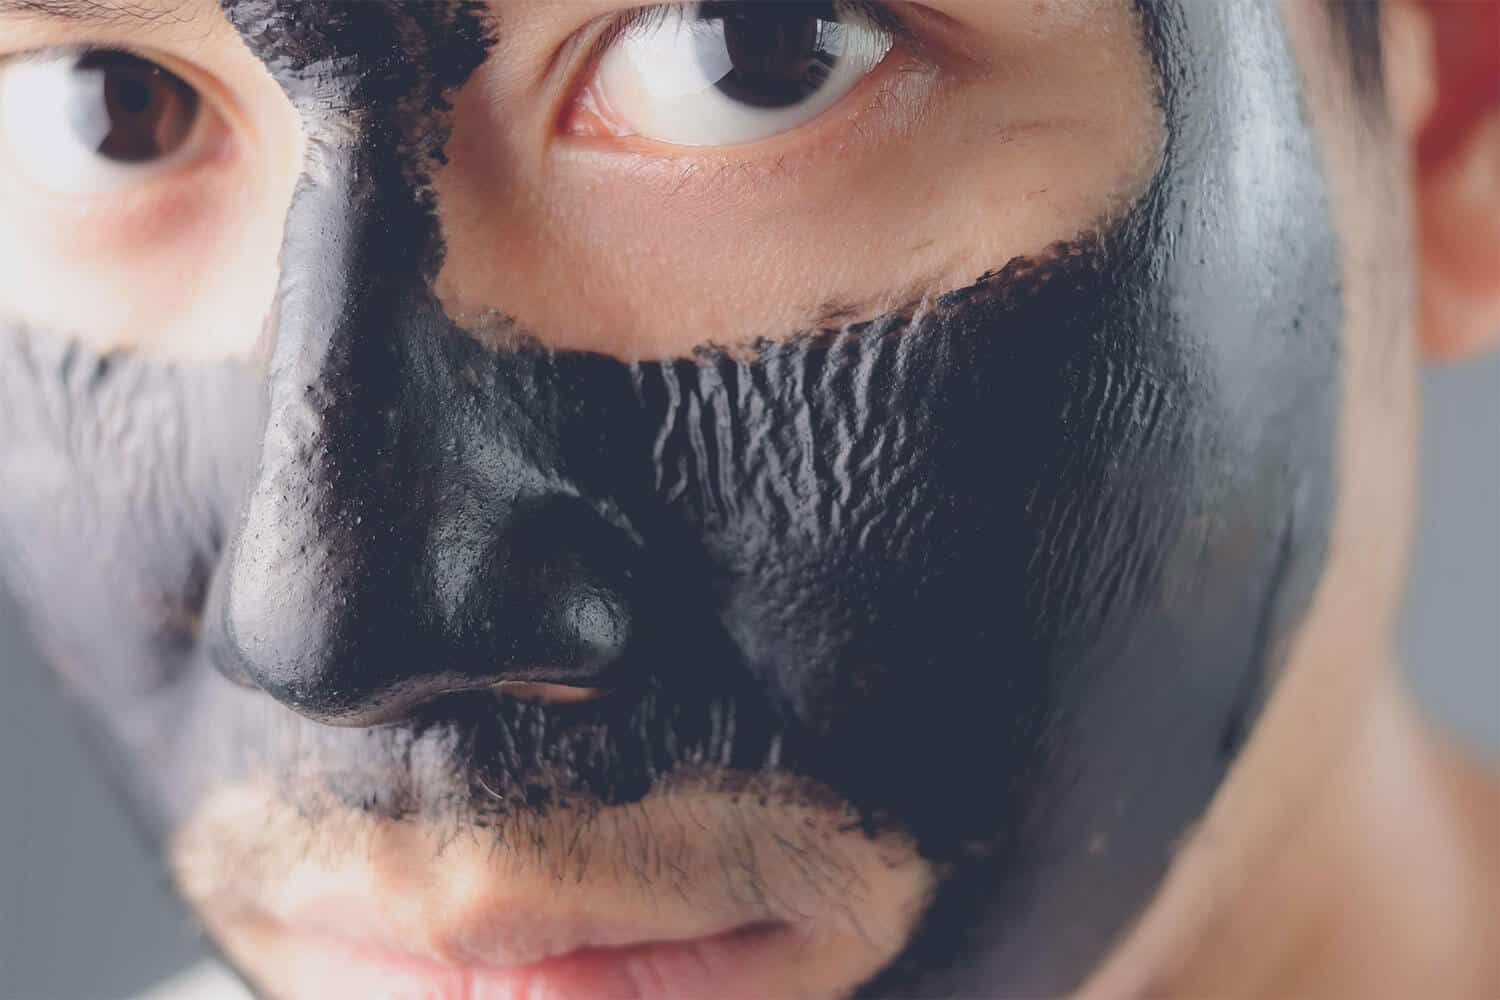 best face mask for men